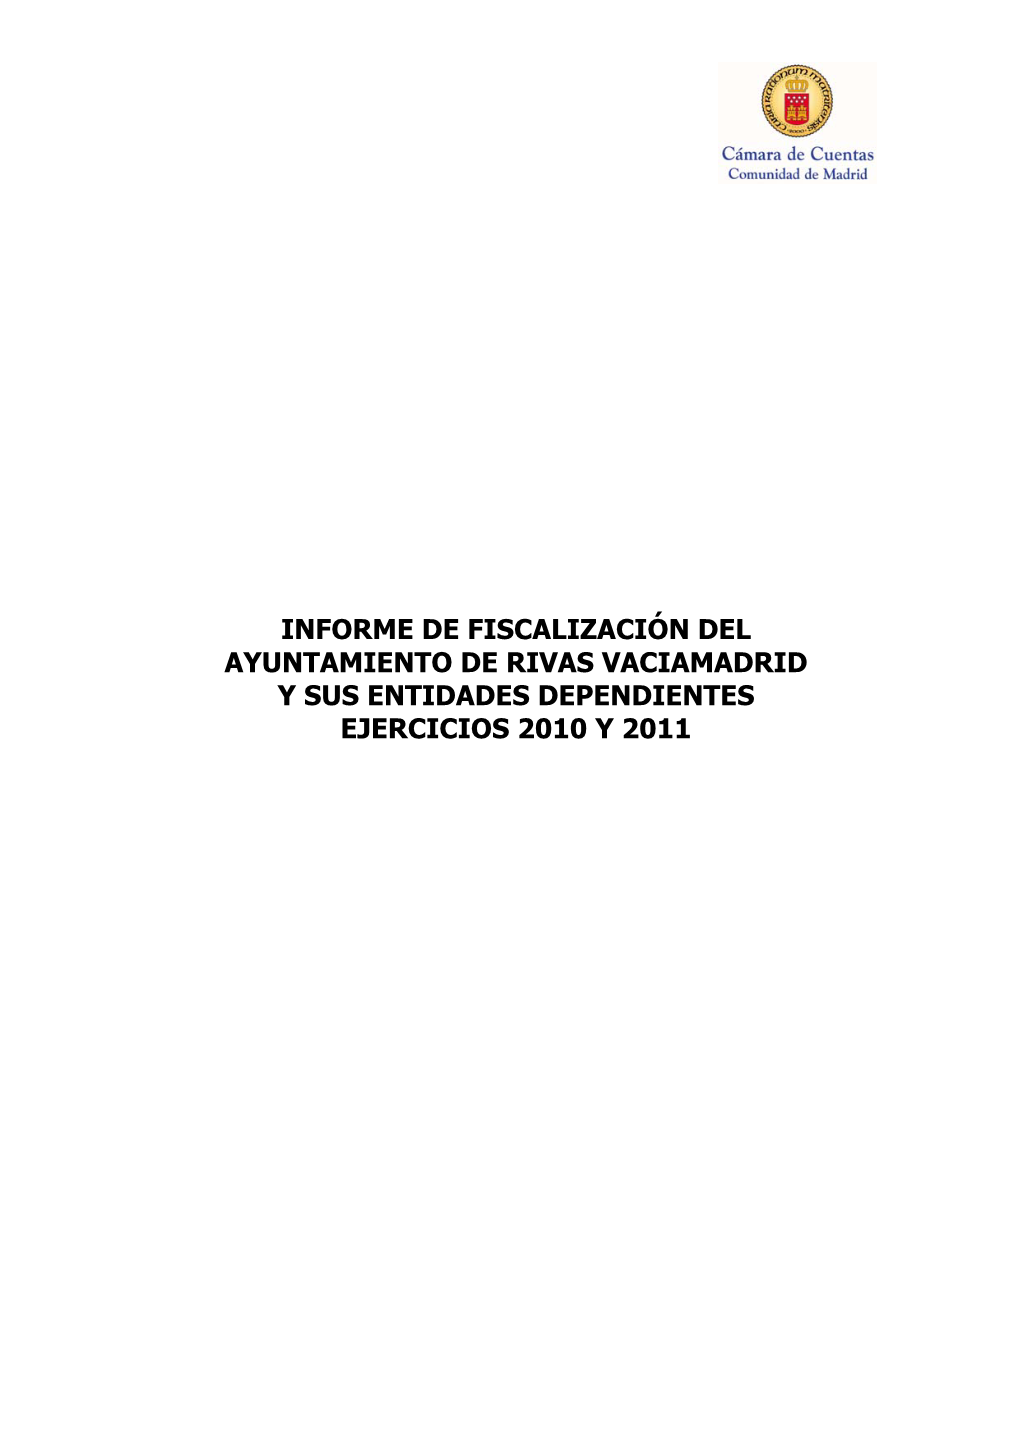 Informe De Fiscalización Del Ayuntamiento De Rivas Vaciamadrid Y Sus Entidades Dependientes. Ejercicios 2010 Y 2011